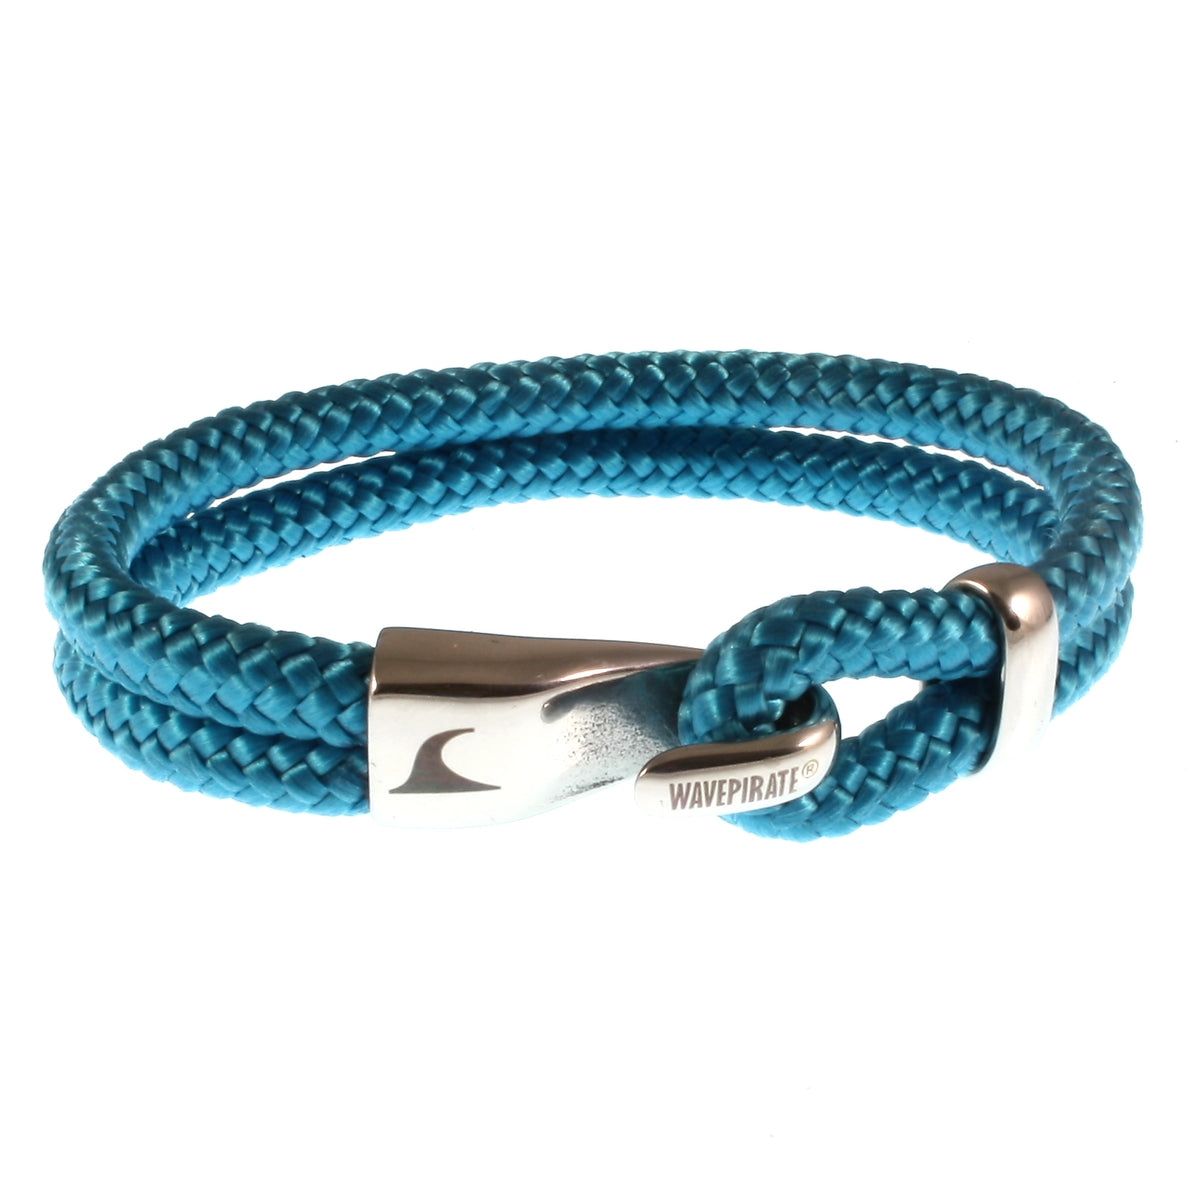 Herren-Segeltau-Armband-Peak-blau-geflochten-Edelstahlverschluss-vorn-wavepirate-shop-st